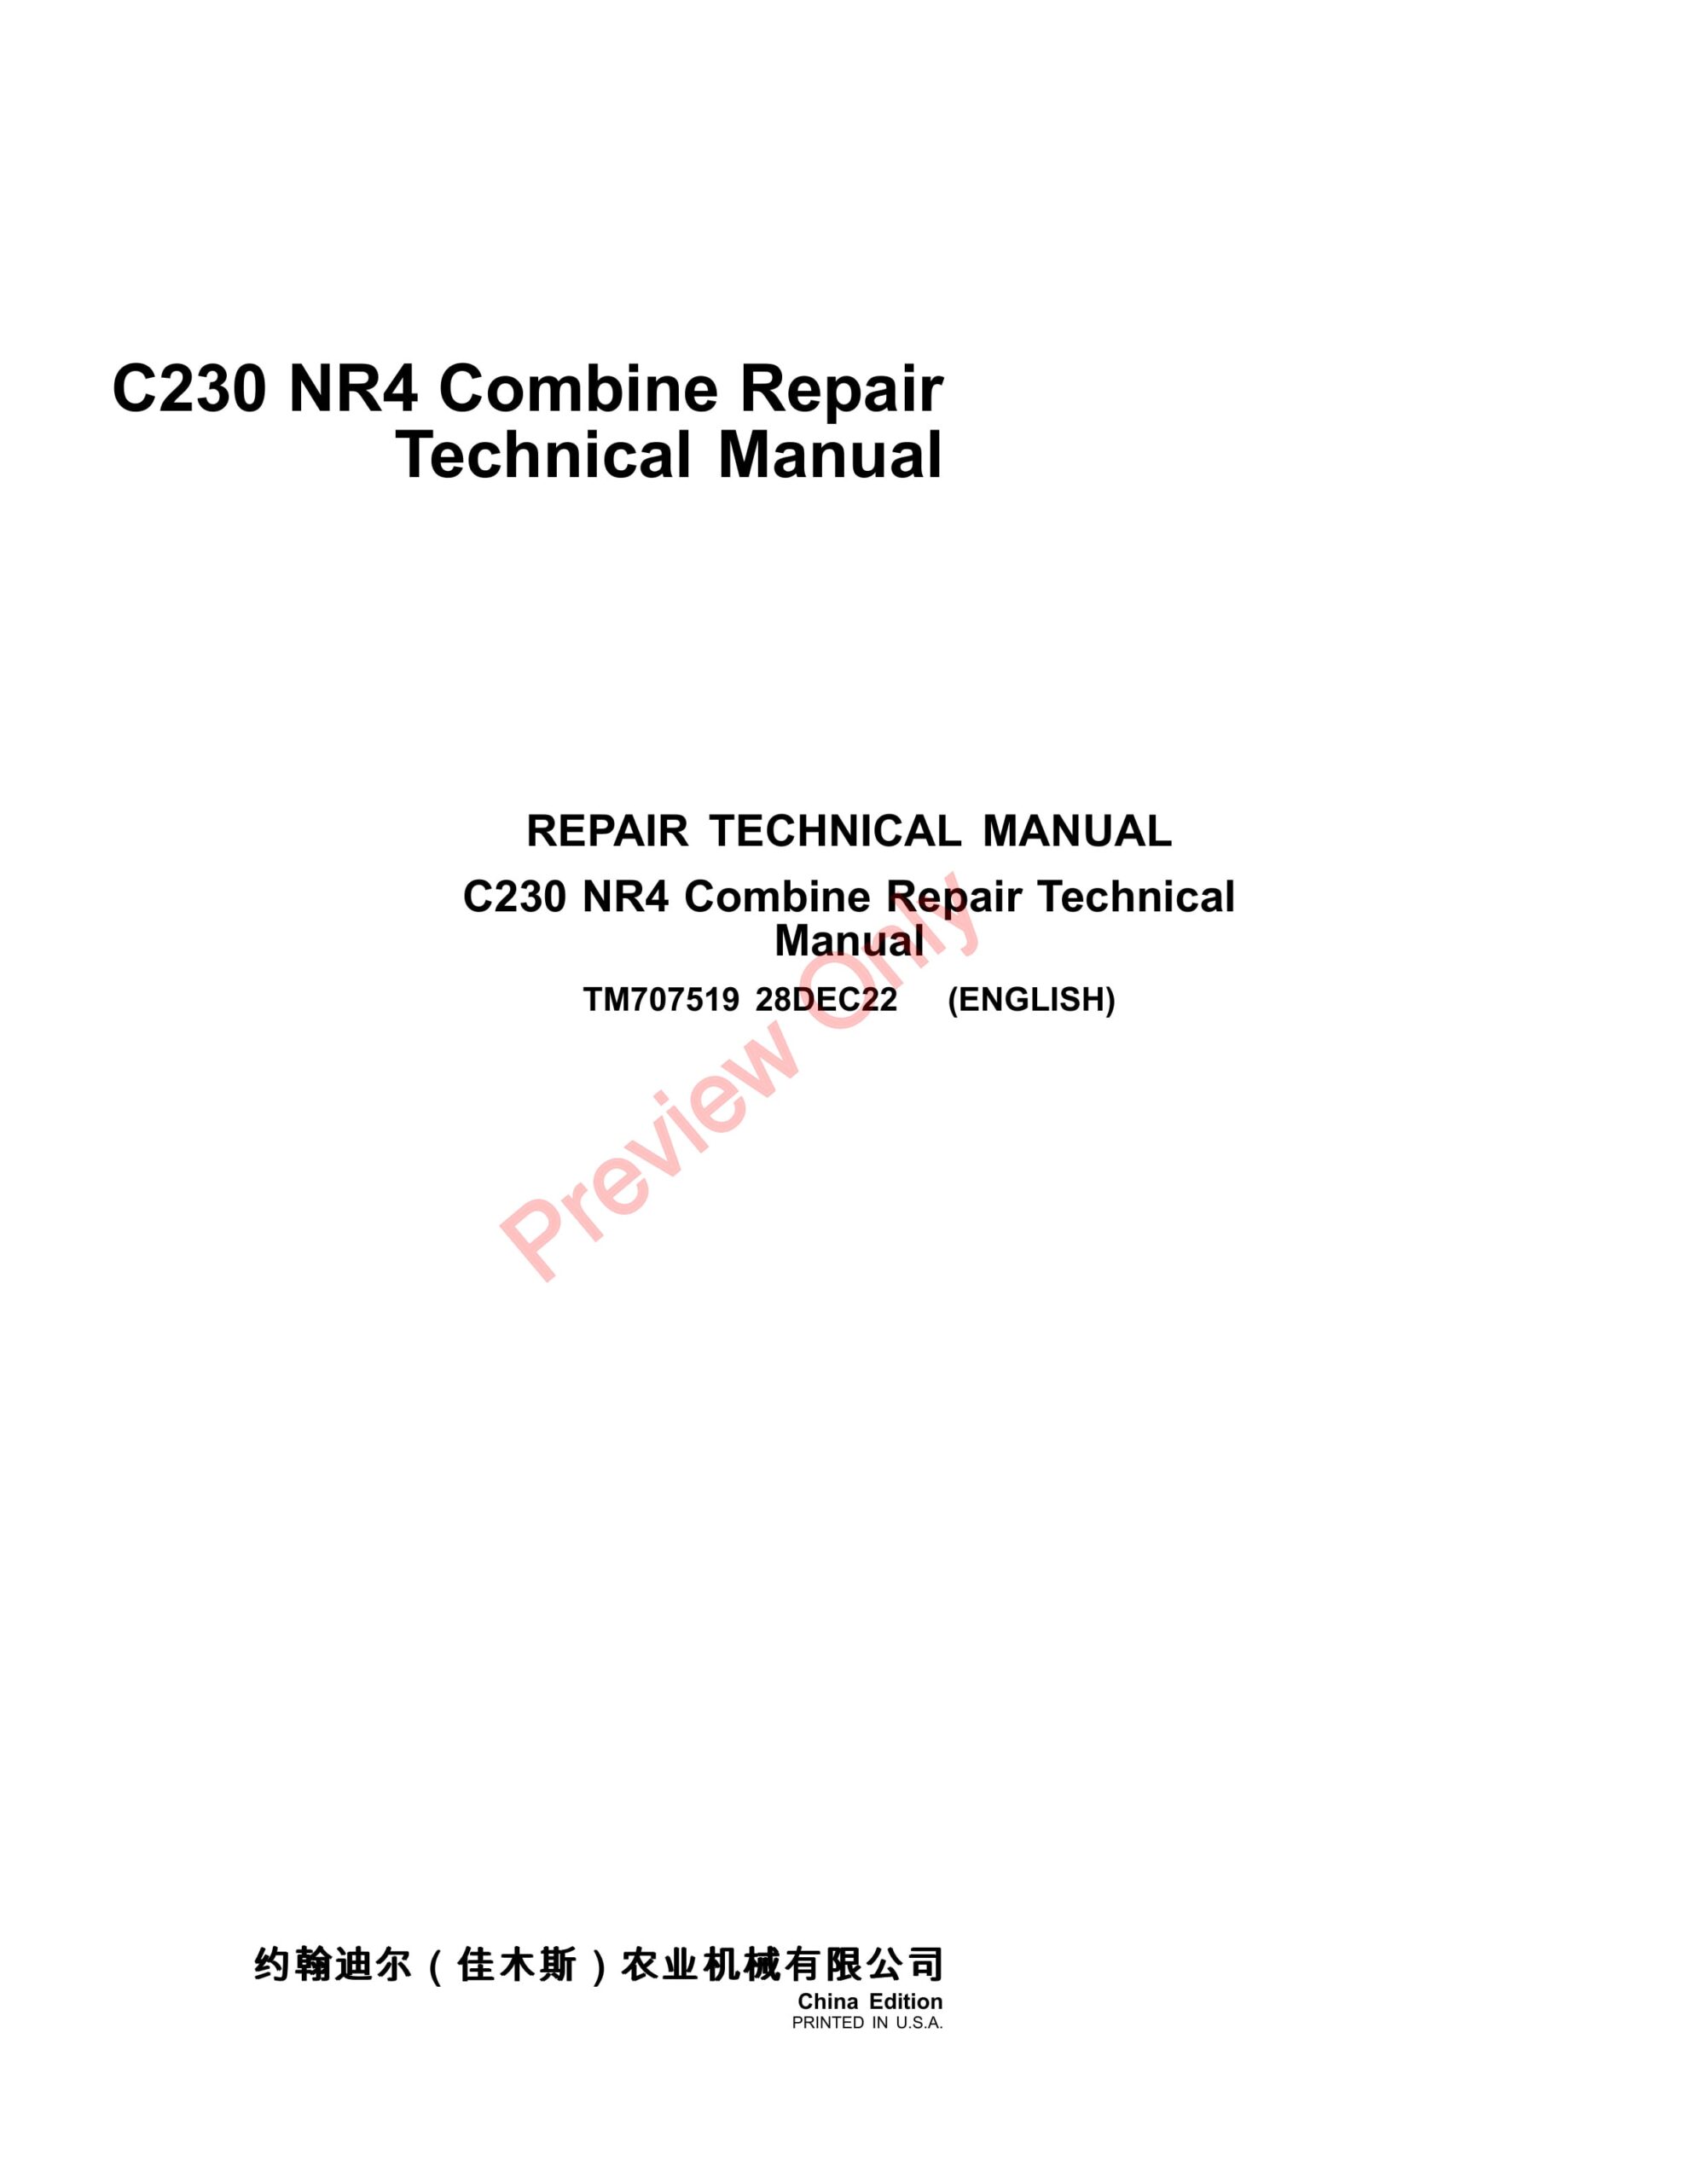 John Deere C230 NR4 Combine Repair Technical Manual TM707519 28DEC22-1